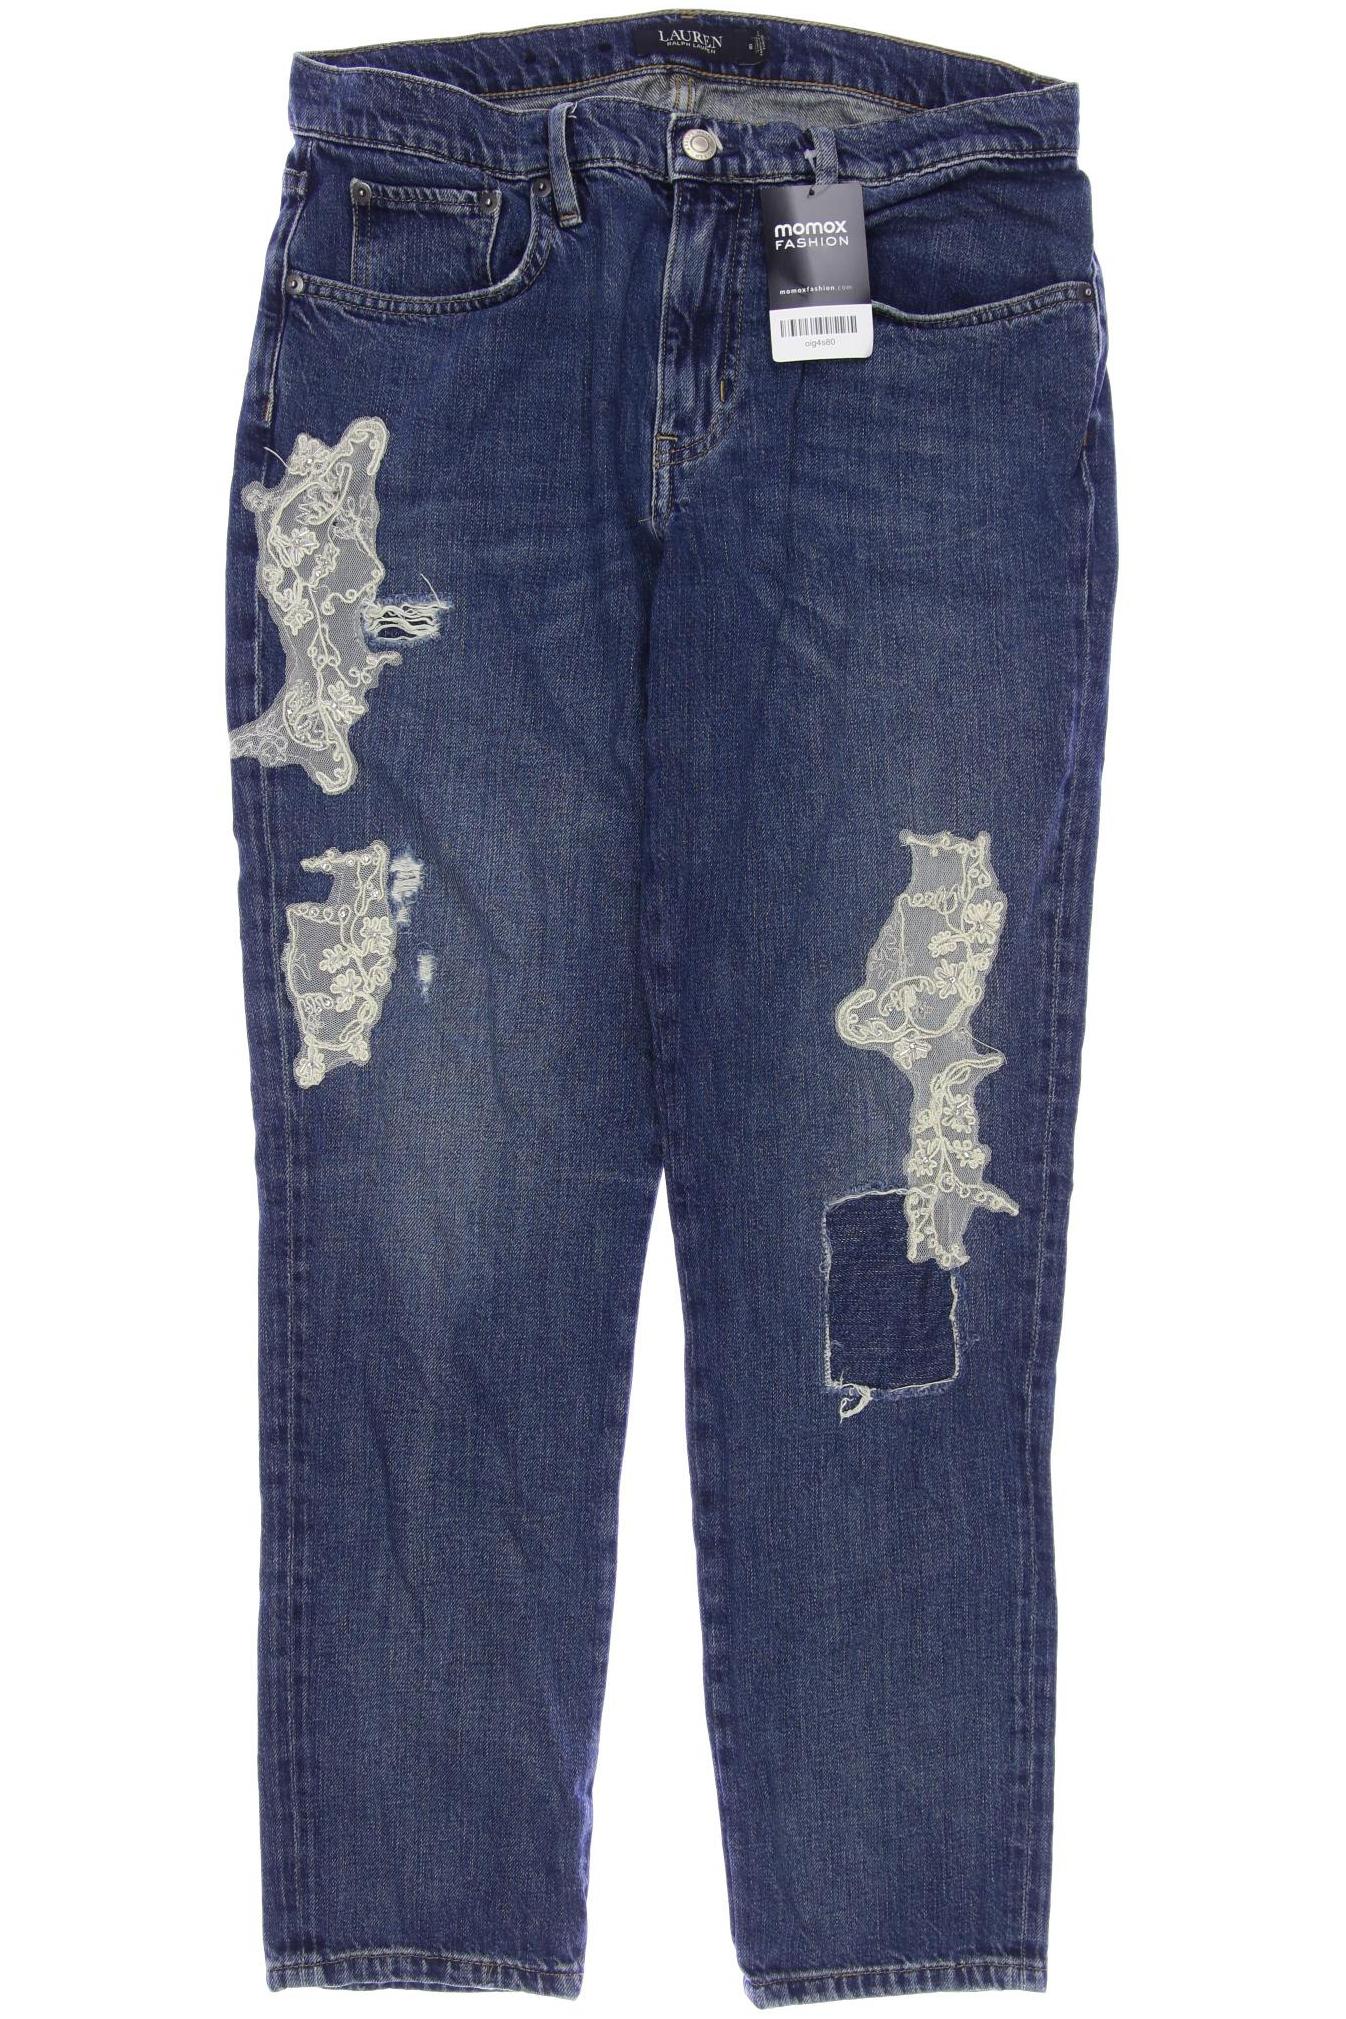 LAUREN Ralph Lauren Damen Jeans, marineblau von Lauren Ralph Lauren